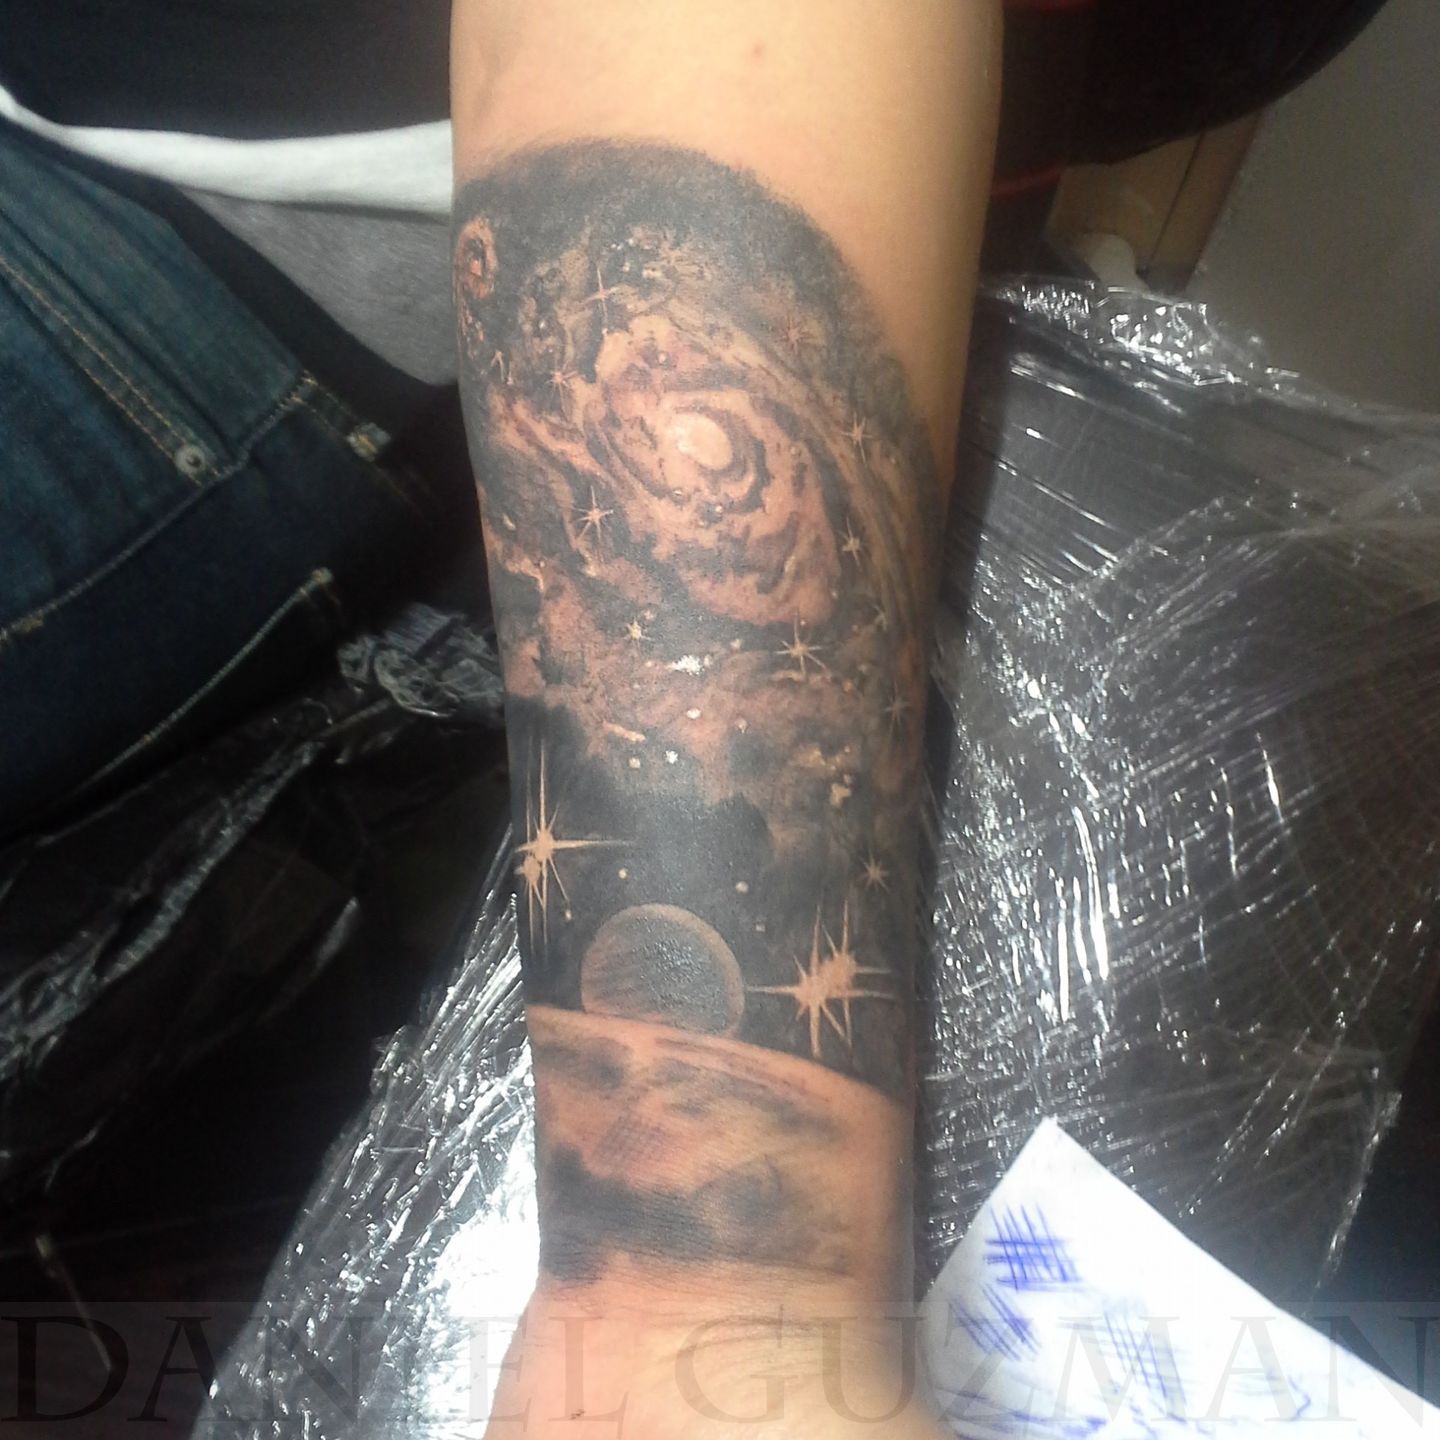 Cagri Durmaz on Instagram rocket moon saturn galaxy star ink tattoo  tattooartist blackworkers blackandwhite linework linetattoo  blacktattoo